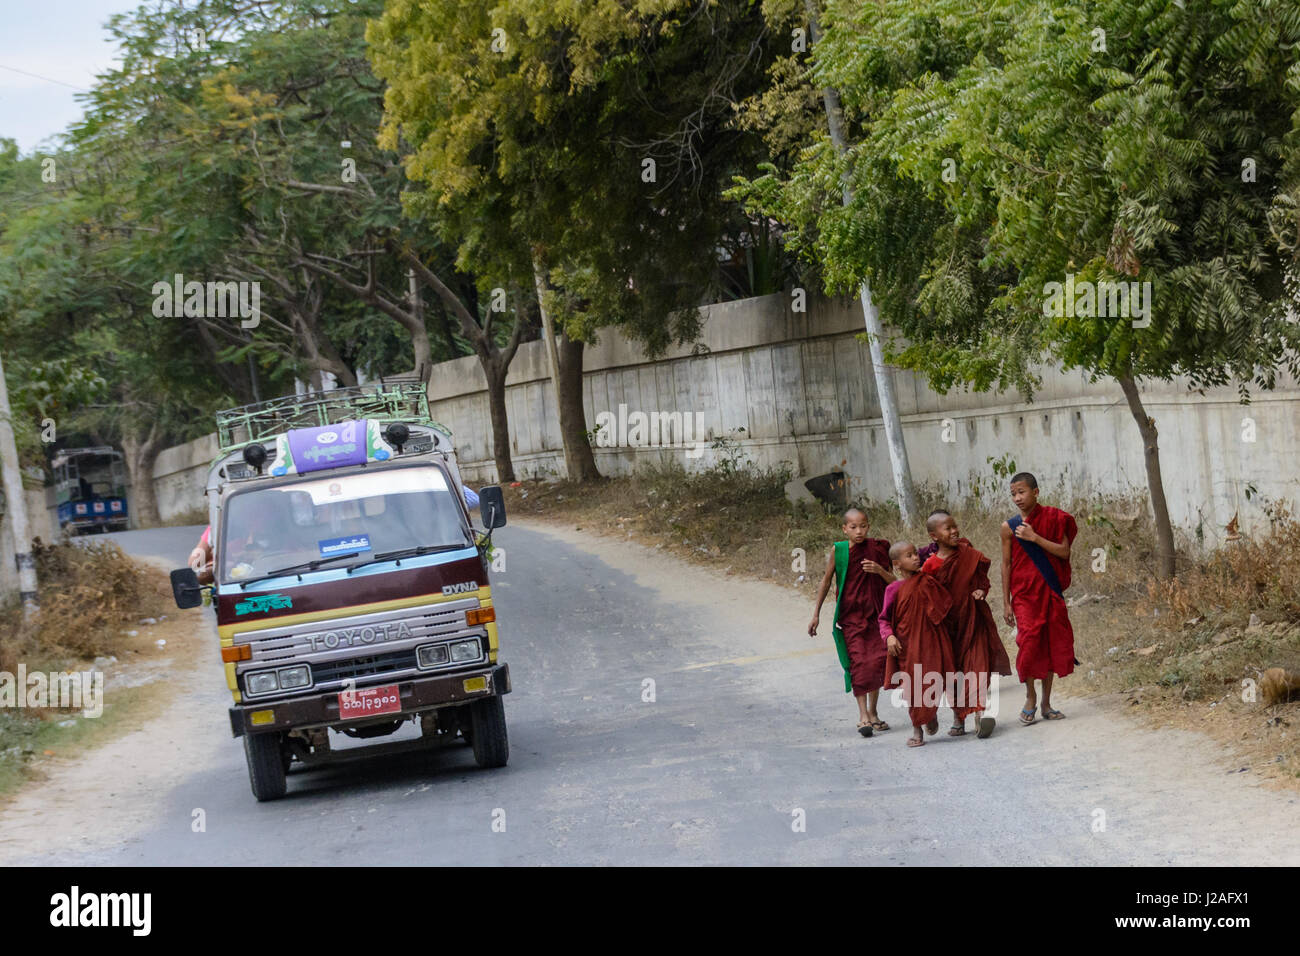 Myanmar (Burma), Mandalay Region, Mandalay, Sagaing Hill Stock Photo